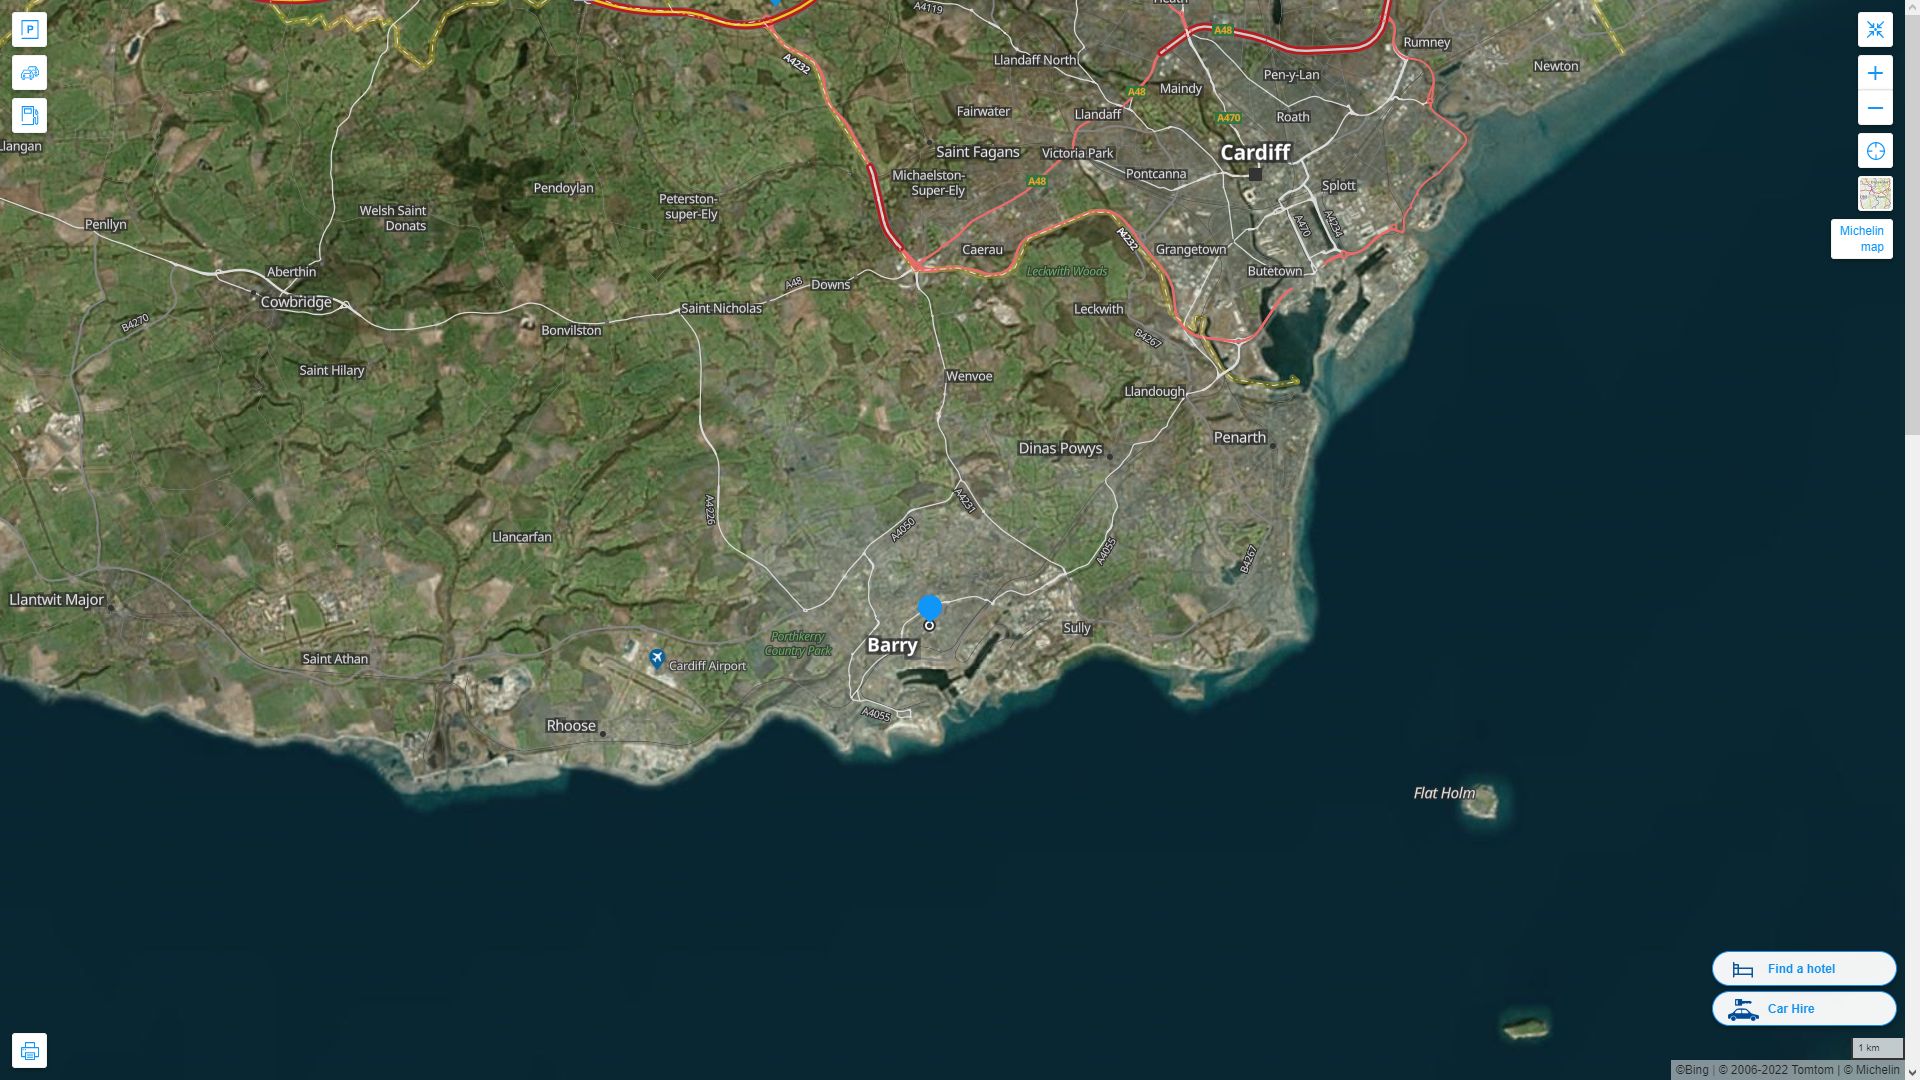 Barry Royaume Uni Autoroute et carte routiere avec vue satellite